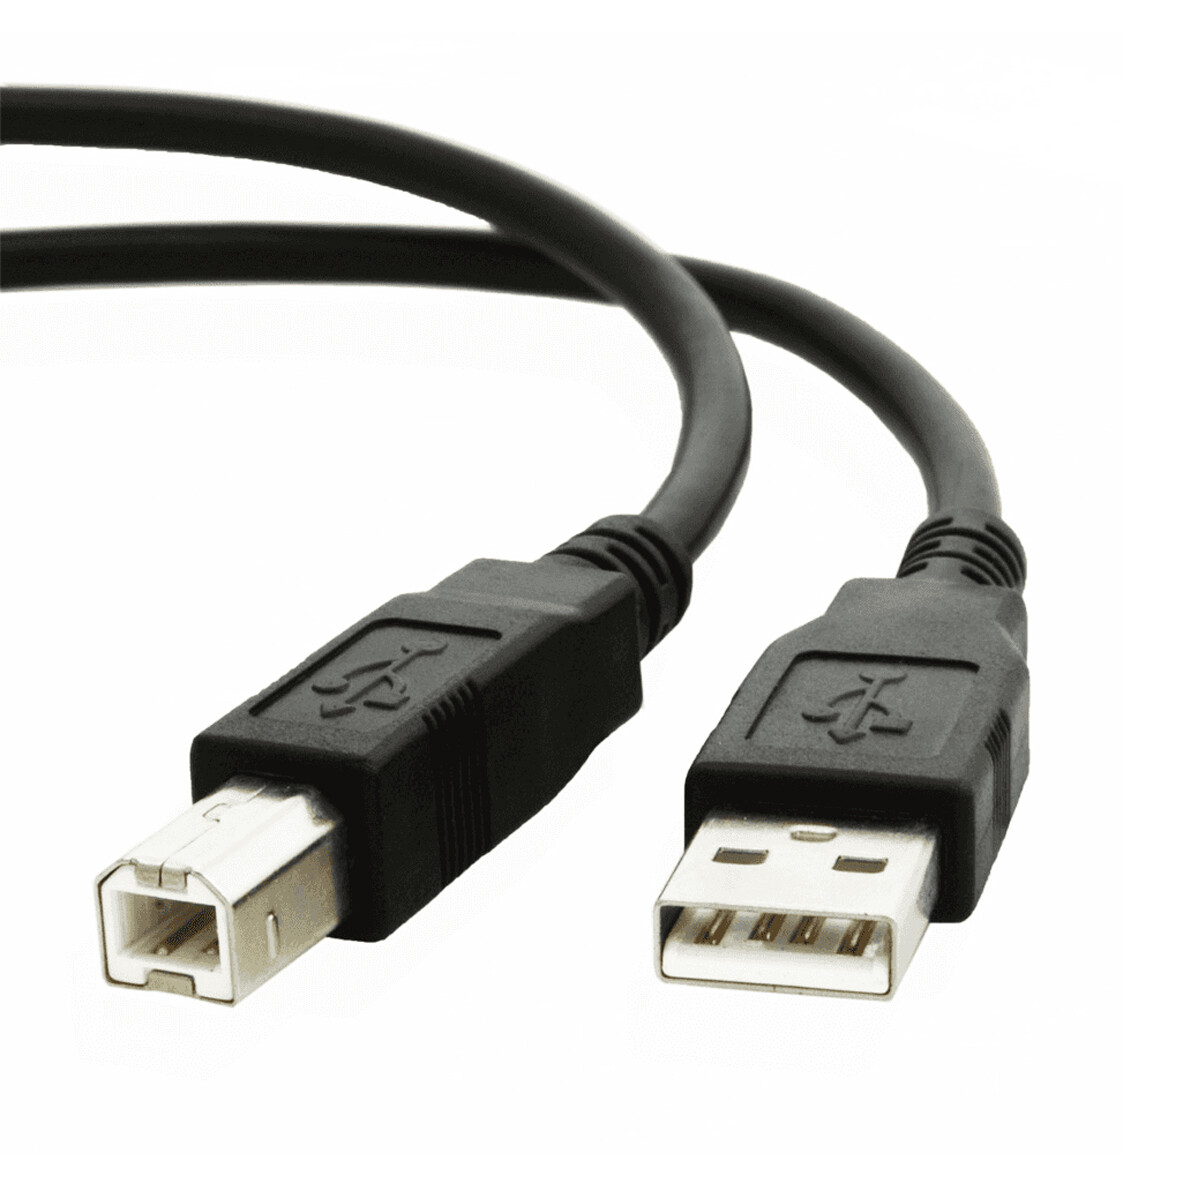 CABLE USB - TIPO AB DE 1,5M, 3M, 5M, 10M